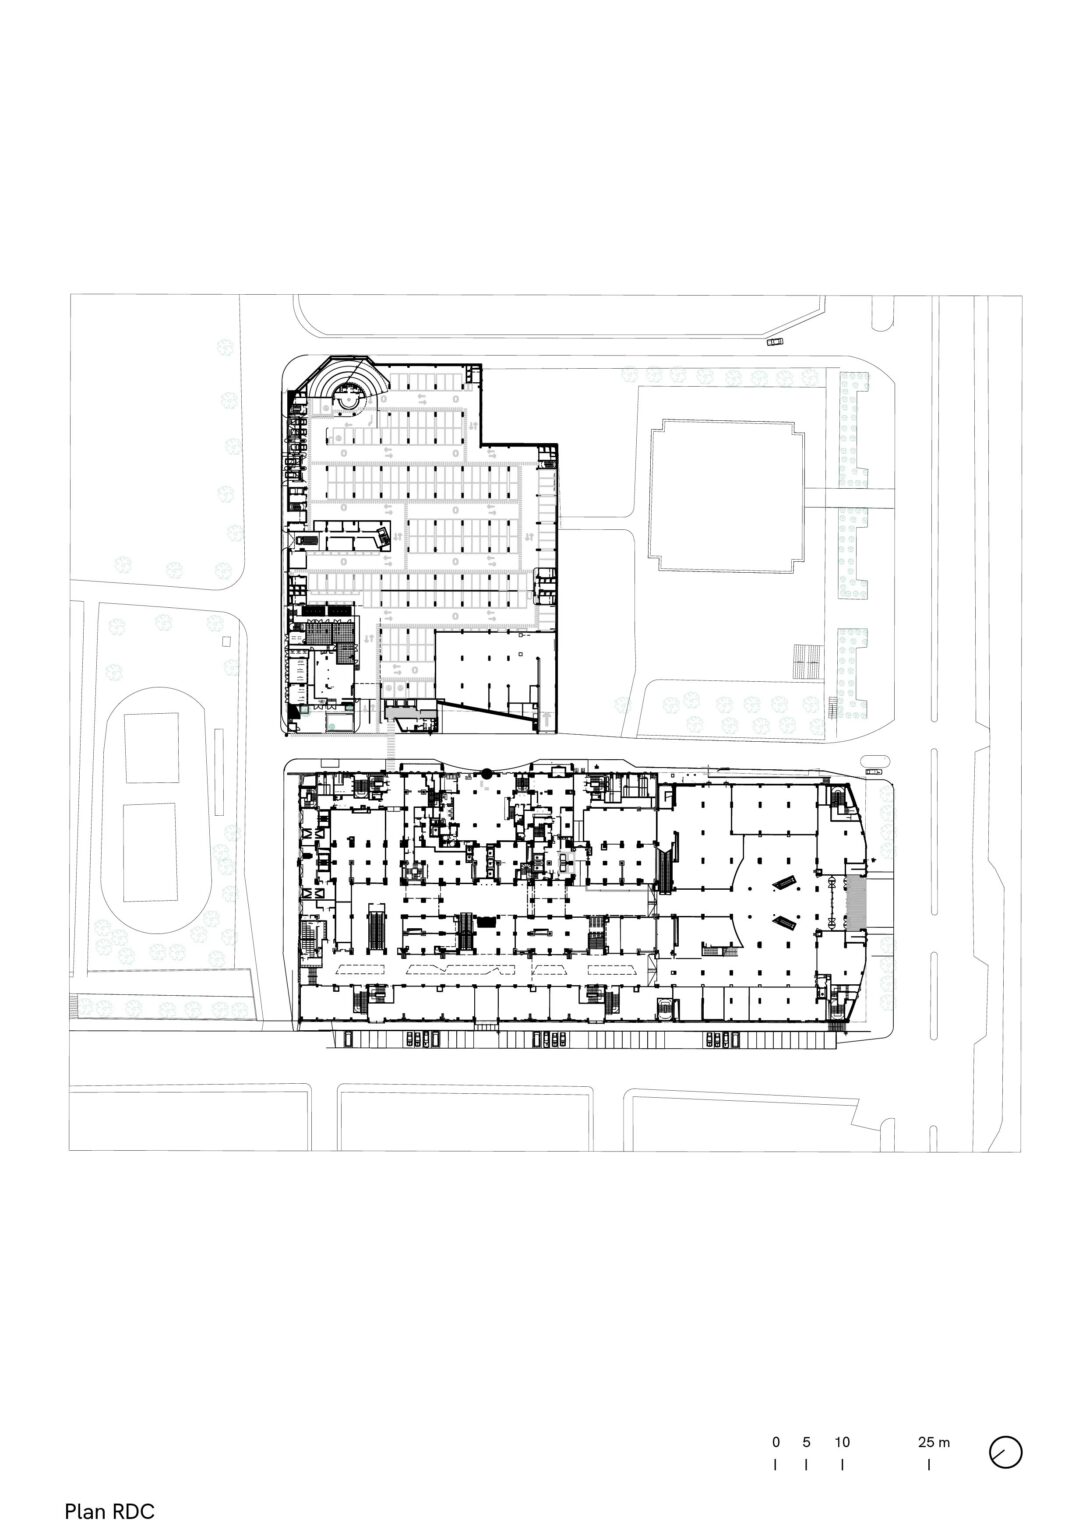 Complexe Park Mall, Setif, Algérie, plan RDC